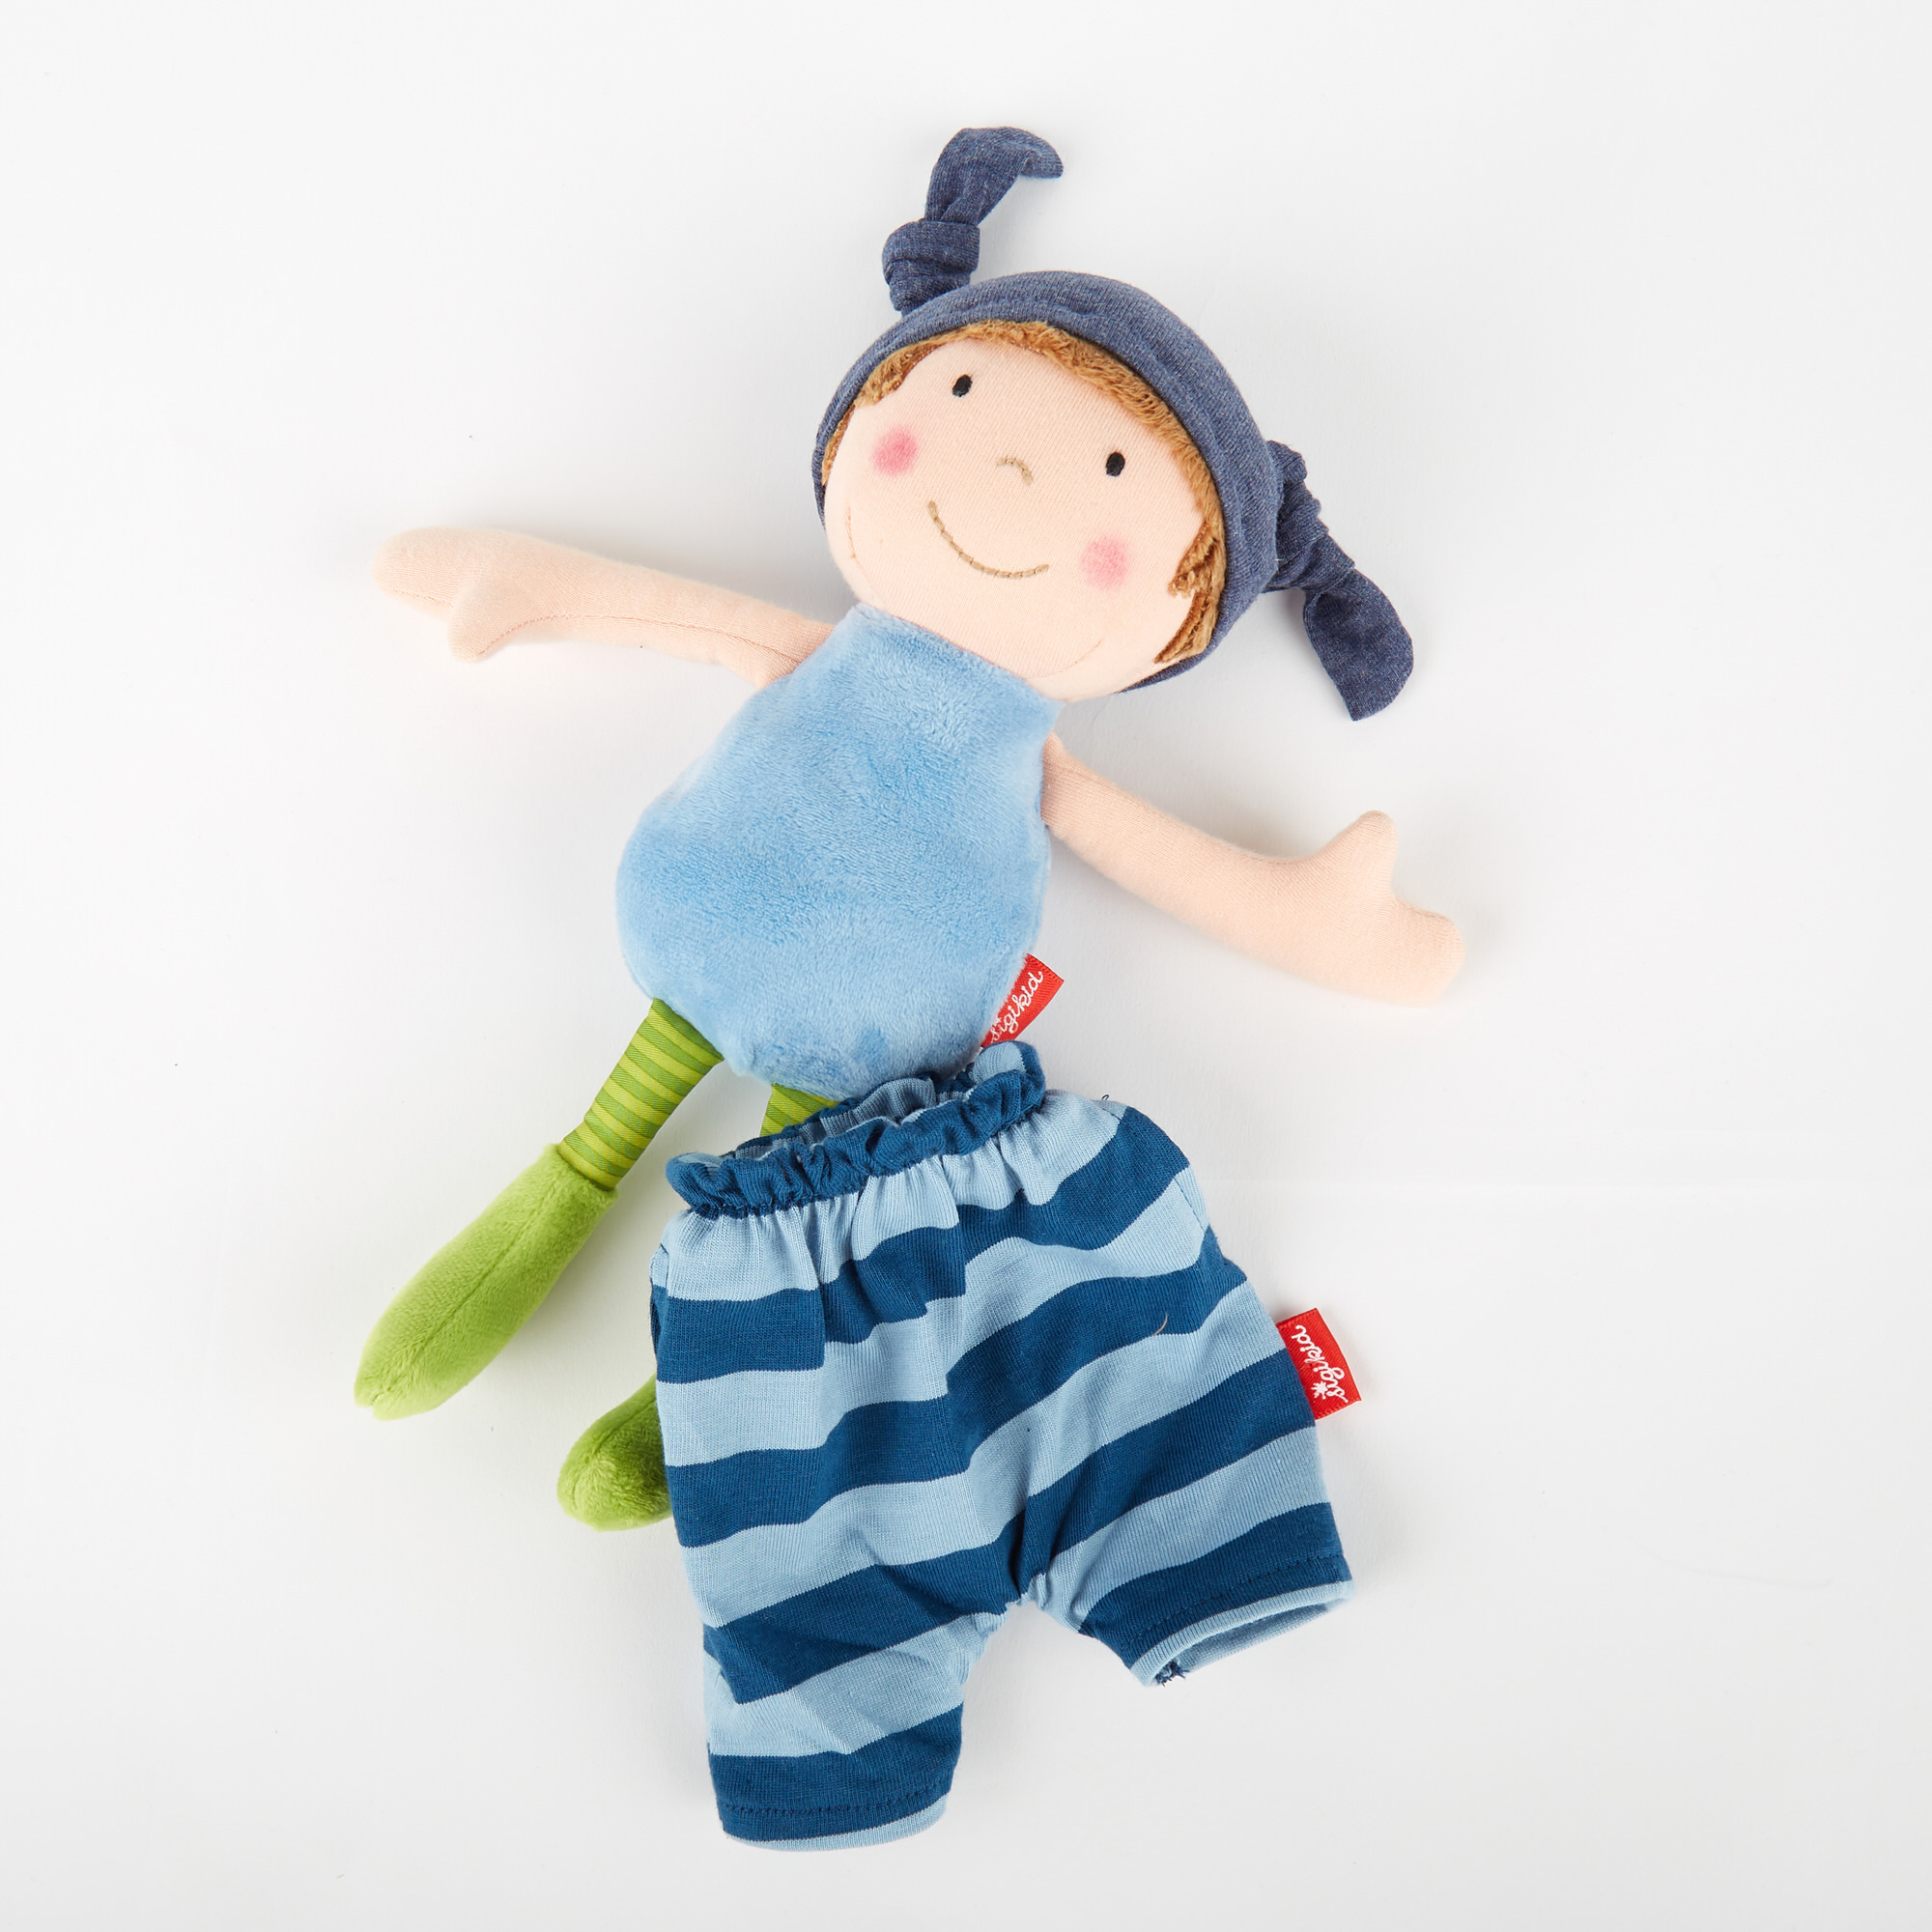 Cuddle soft doll boy, striped blue one-piece